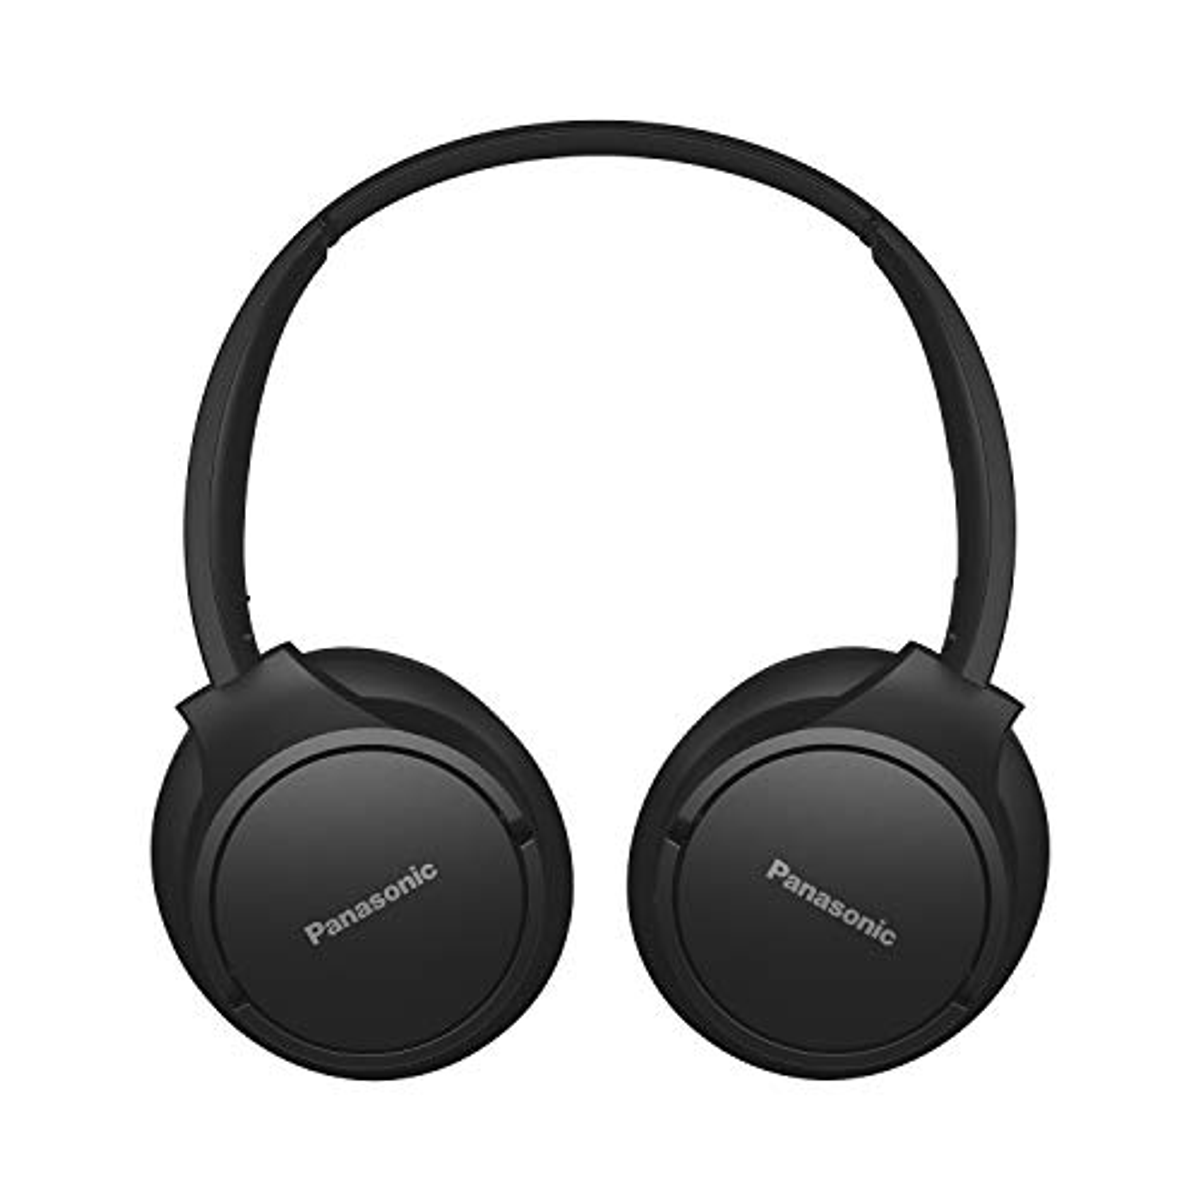 PANASONIC RB-HF520BE-K OVER-EAR KOPFHÖRER BT Over-ear SCHWARZ, Bluetooth Schwarz Kopfhörer